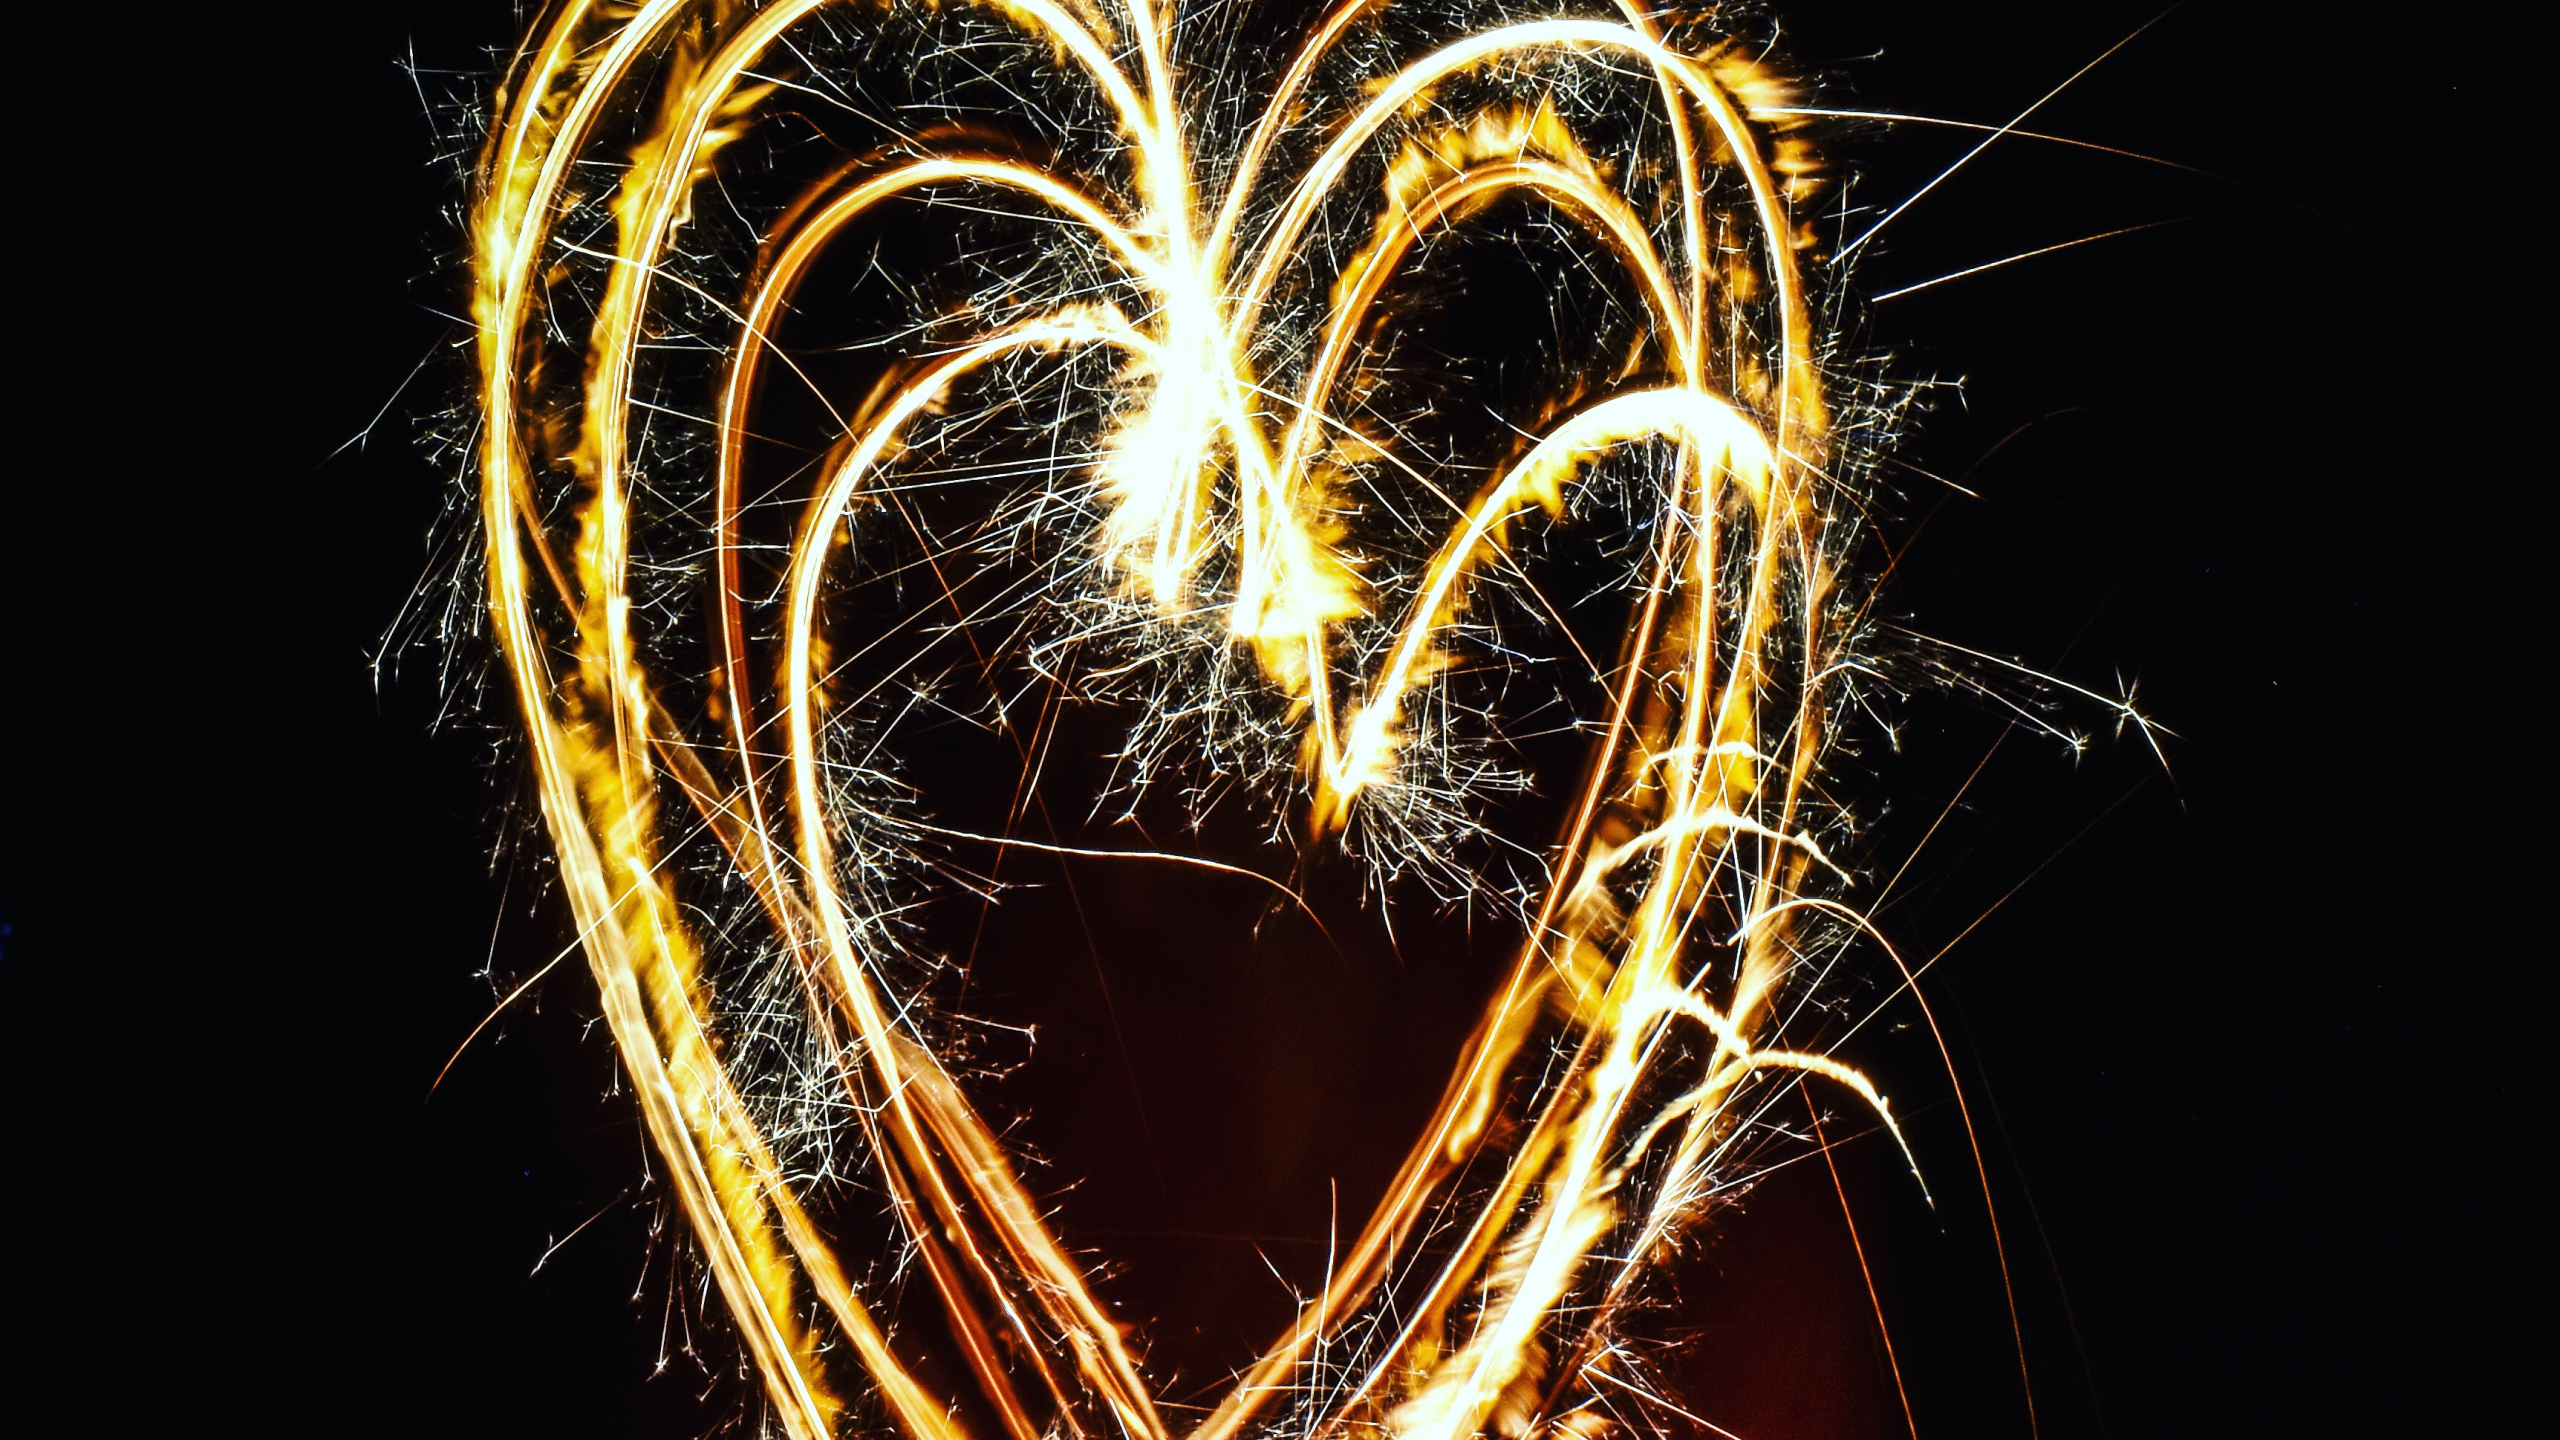 Sparkler, Fireworks, Heart, Light, Love. Wallpaper in 2560x1440 Resolution